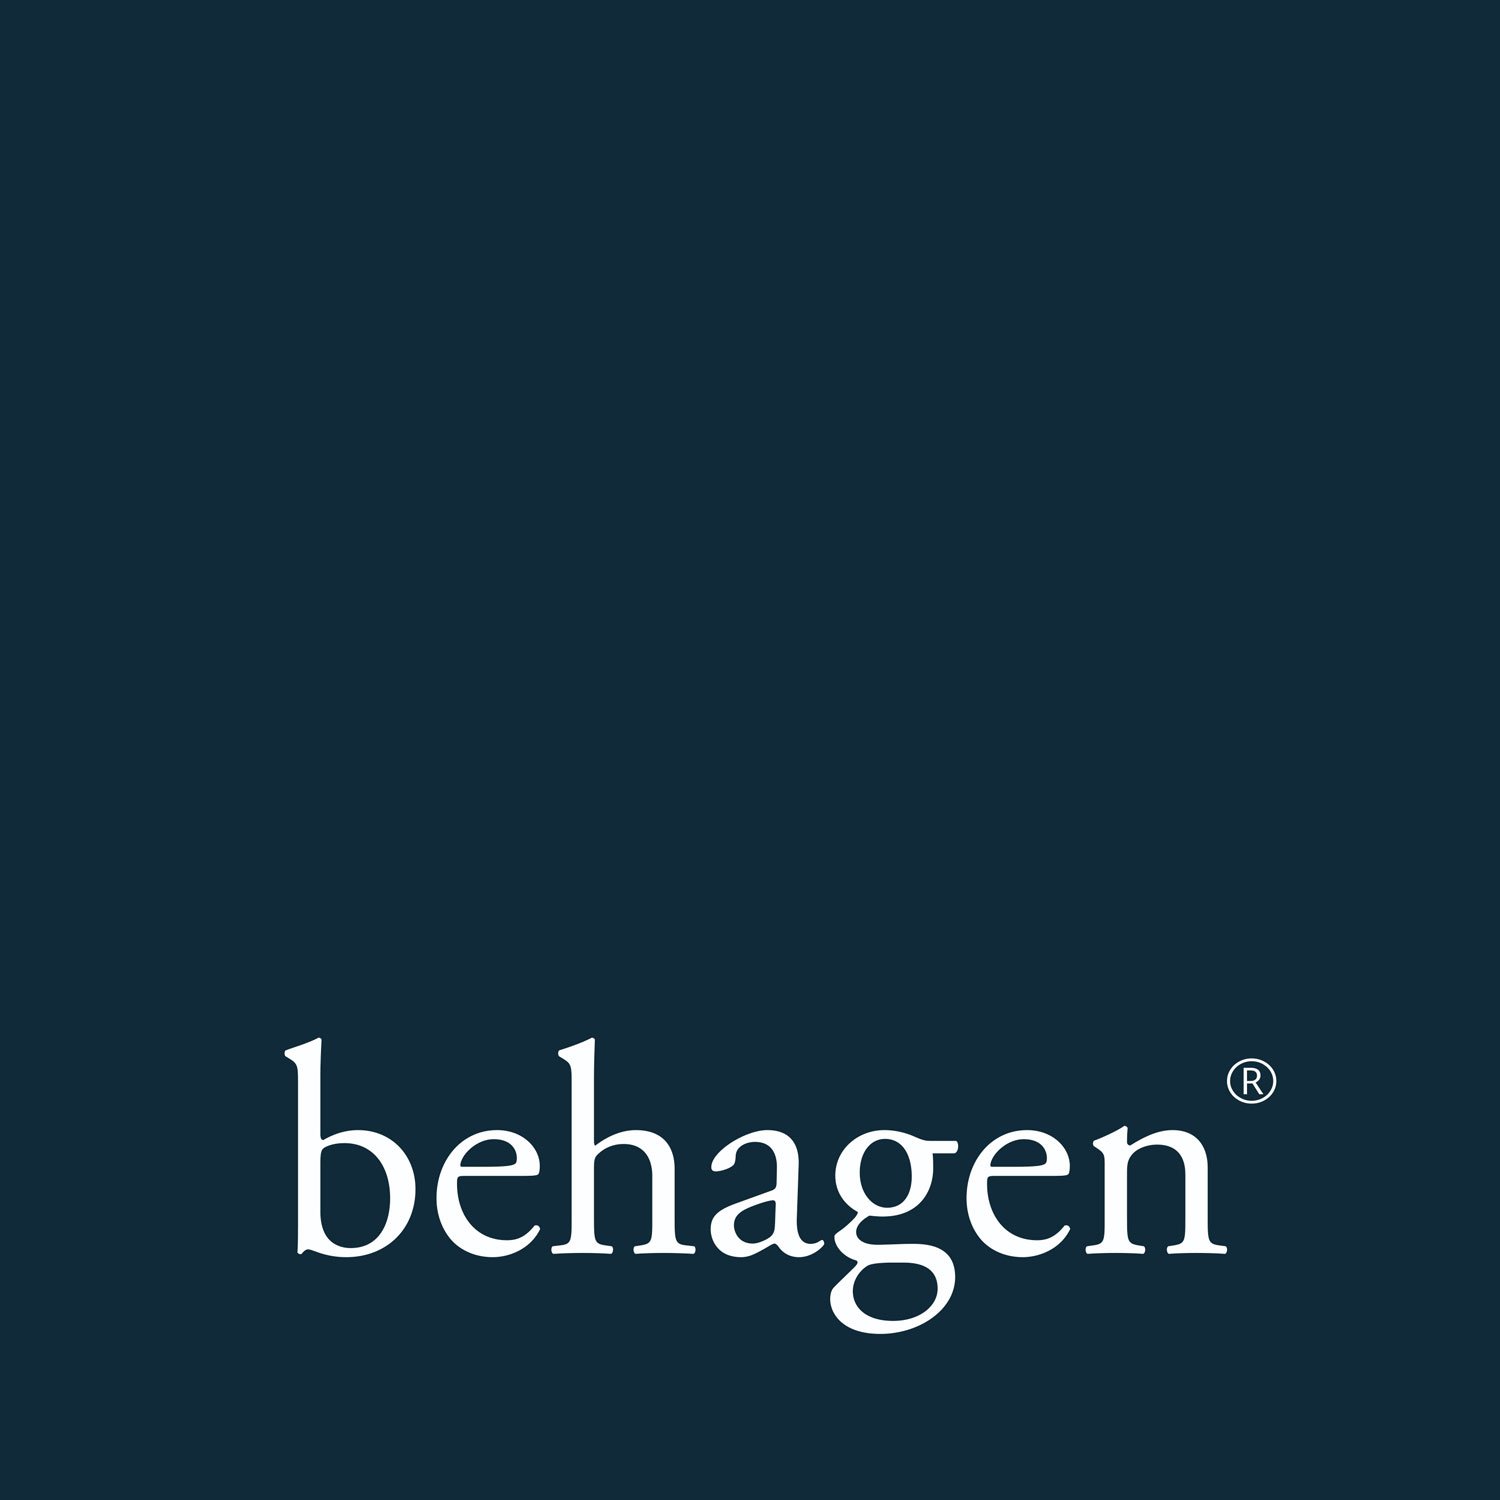 behagen | Branding for Real Estate and Hospitality